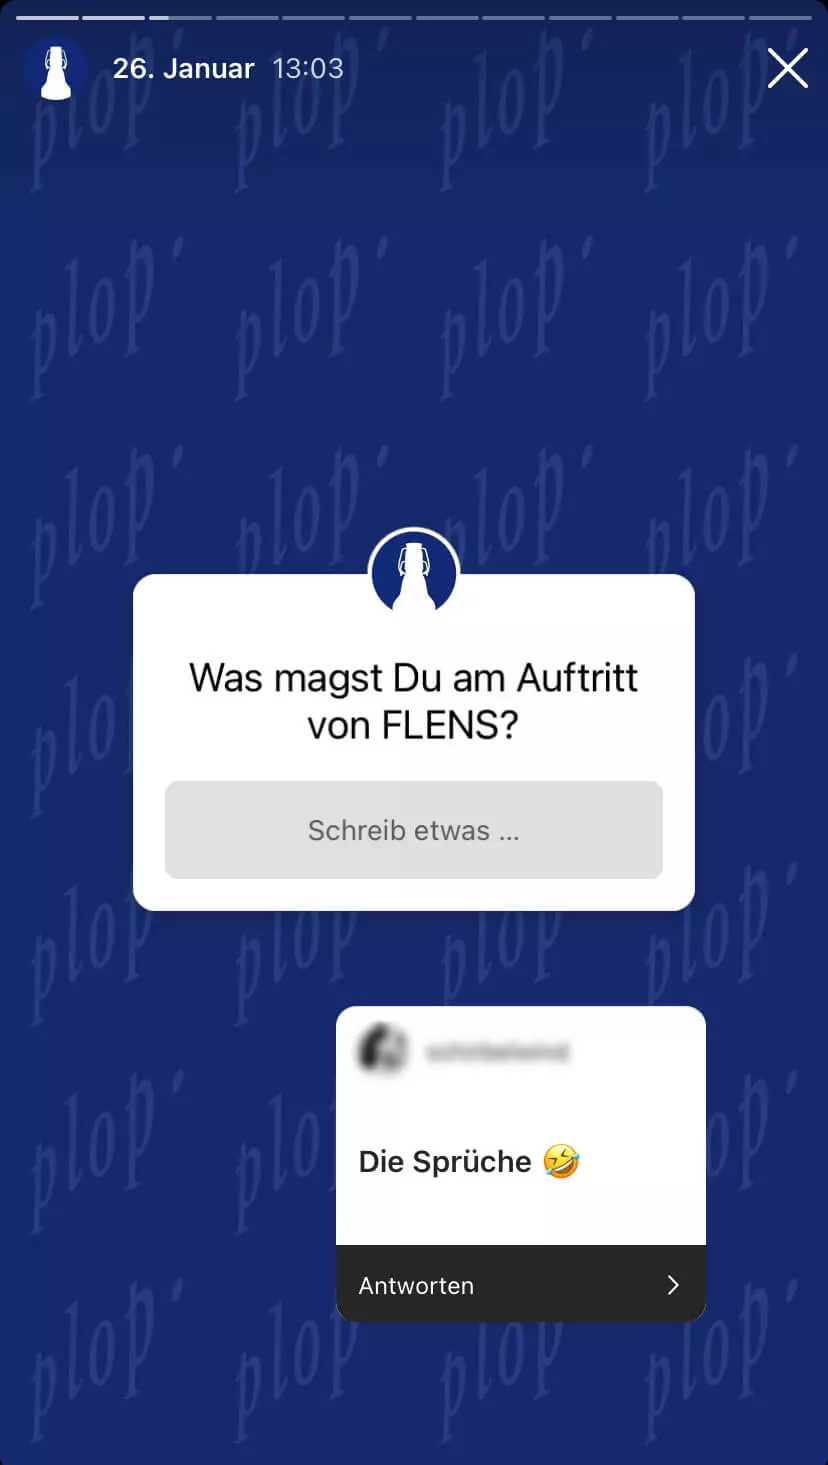 Screenshot von einer Instagram-Story mit Umfrage-Sticker "Was magst Du am Auftritt von FLENS?" und Antwort-Sticker "Die Sprüche" mit lachendem Emoji.